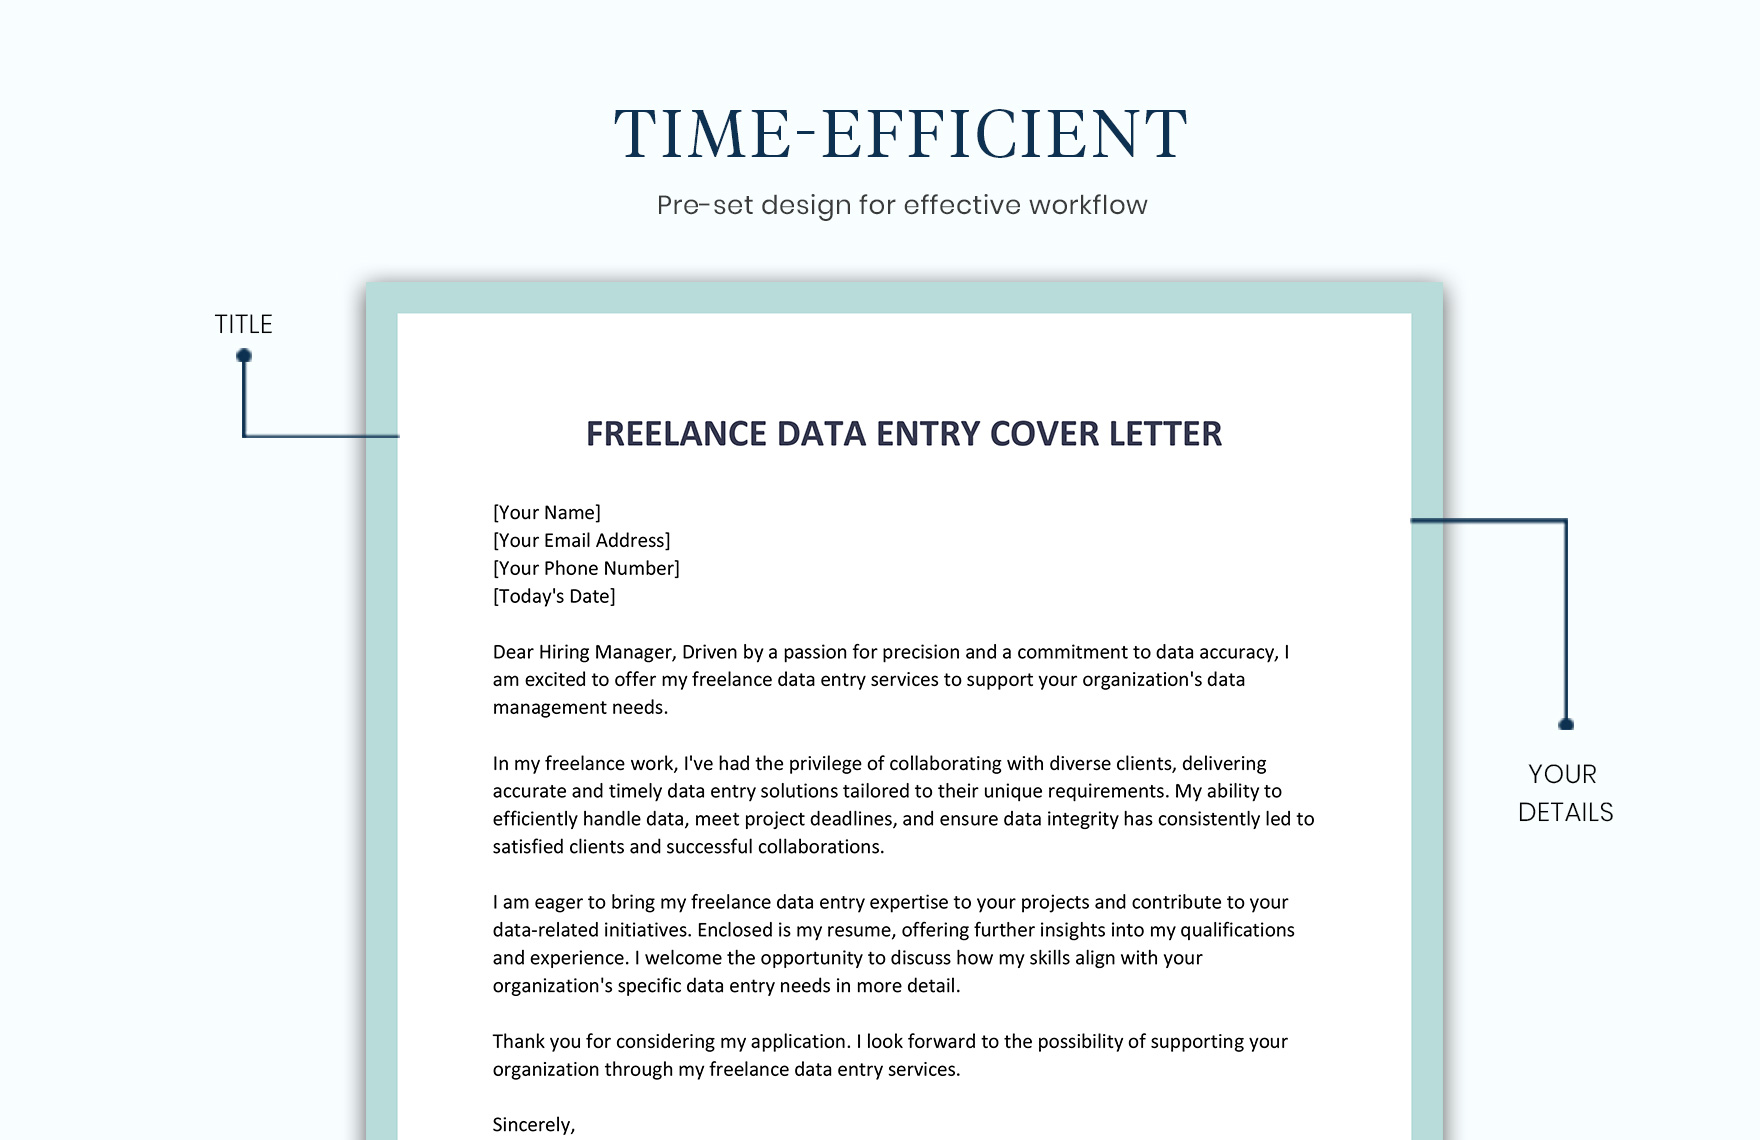 Freelance Data Entry Cover Letter